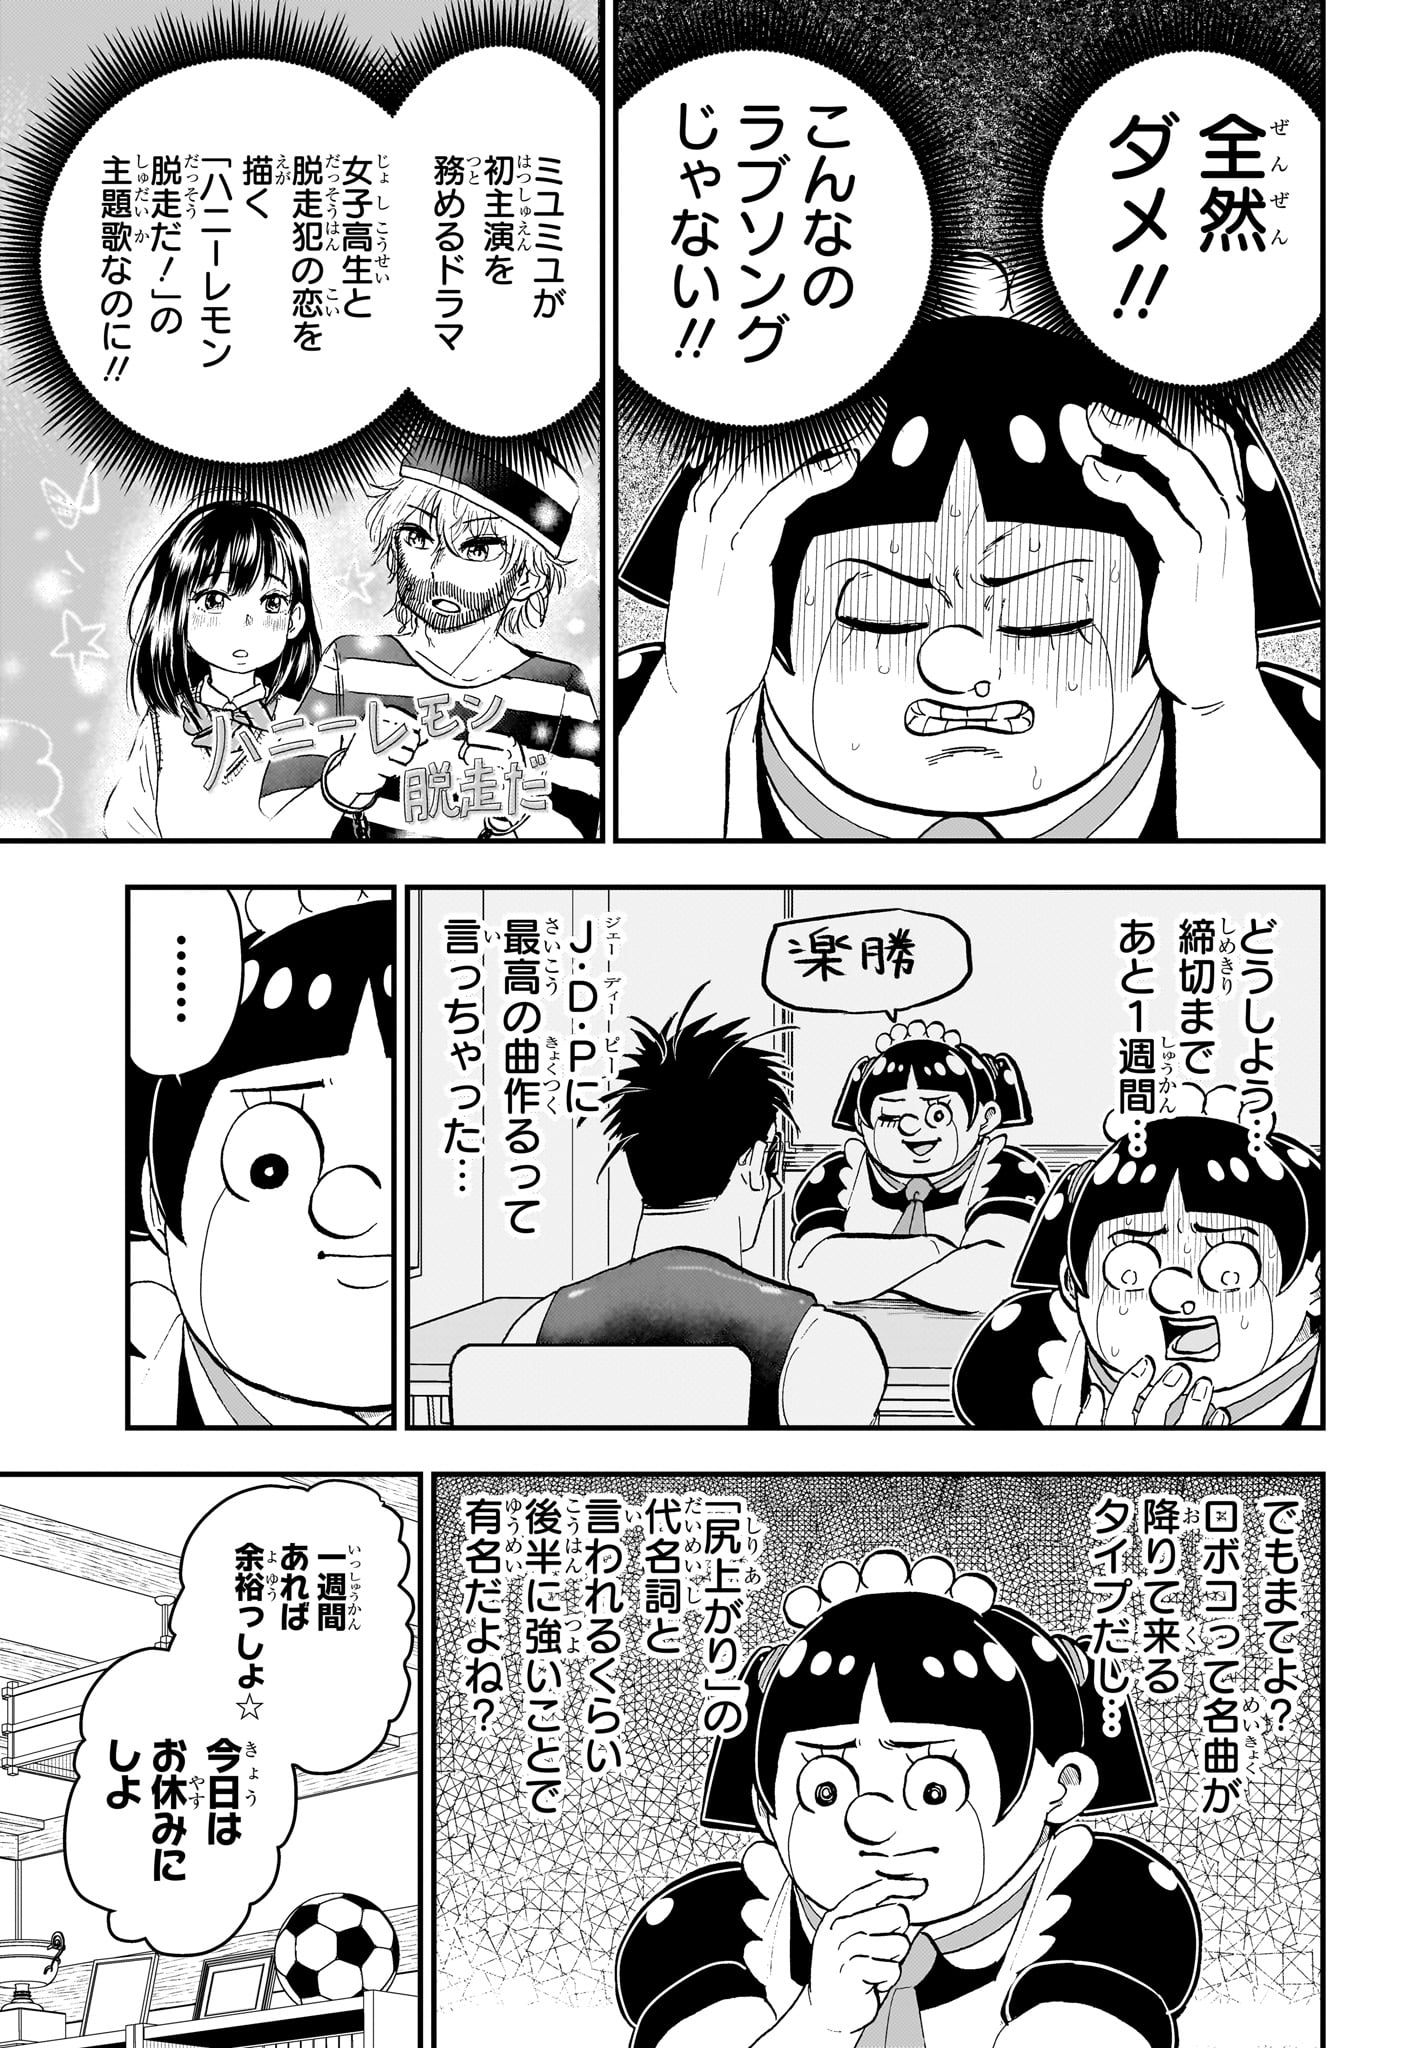 Boku to Roboko - Chapter 170 - Page 3